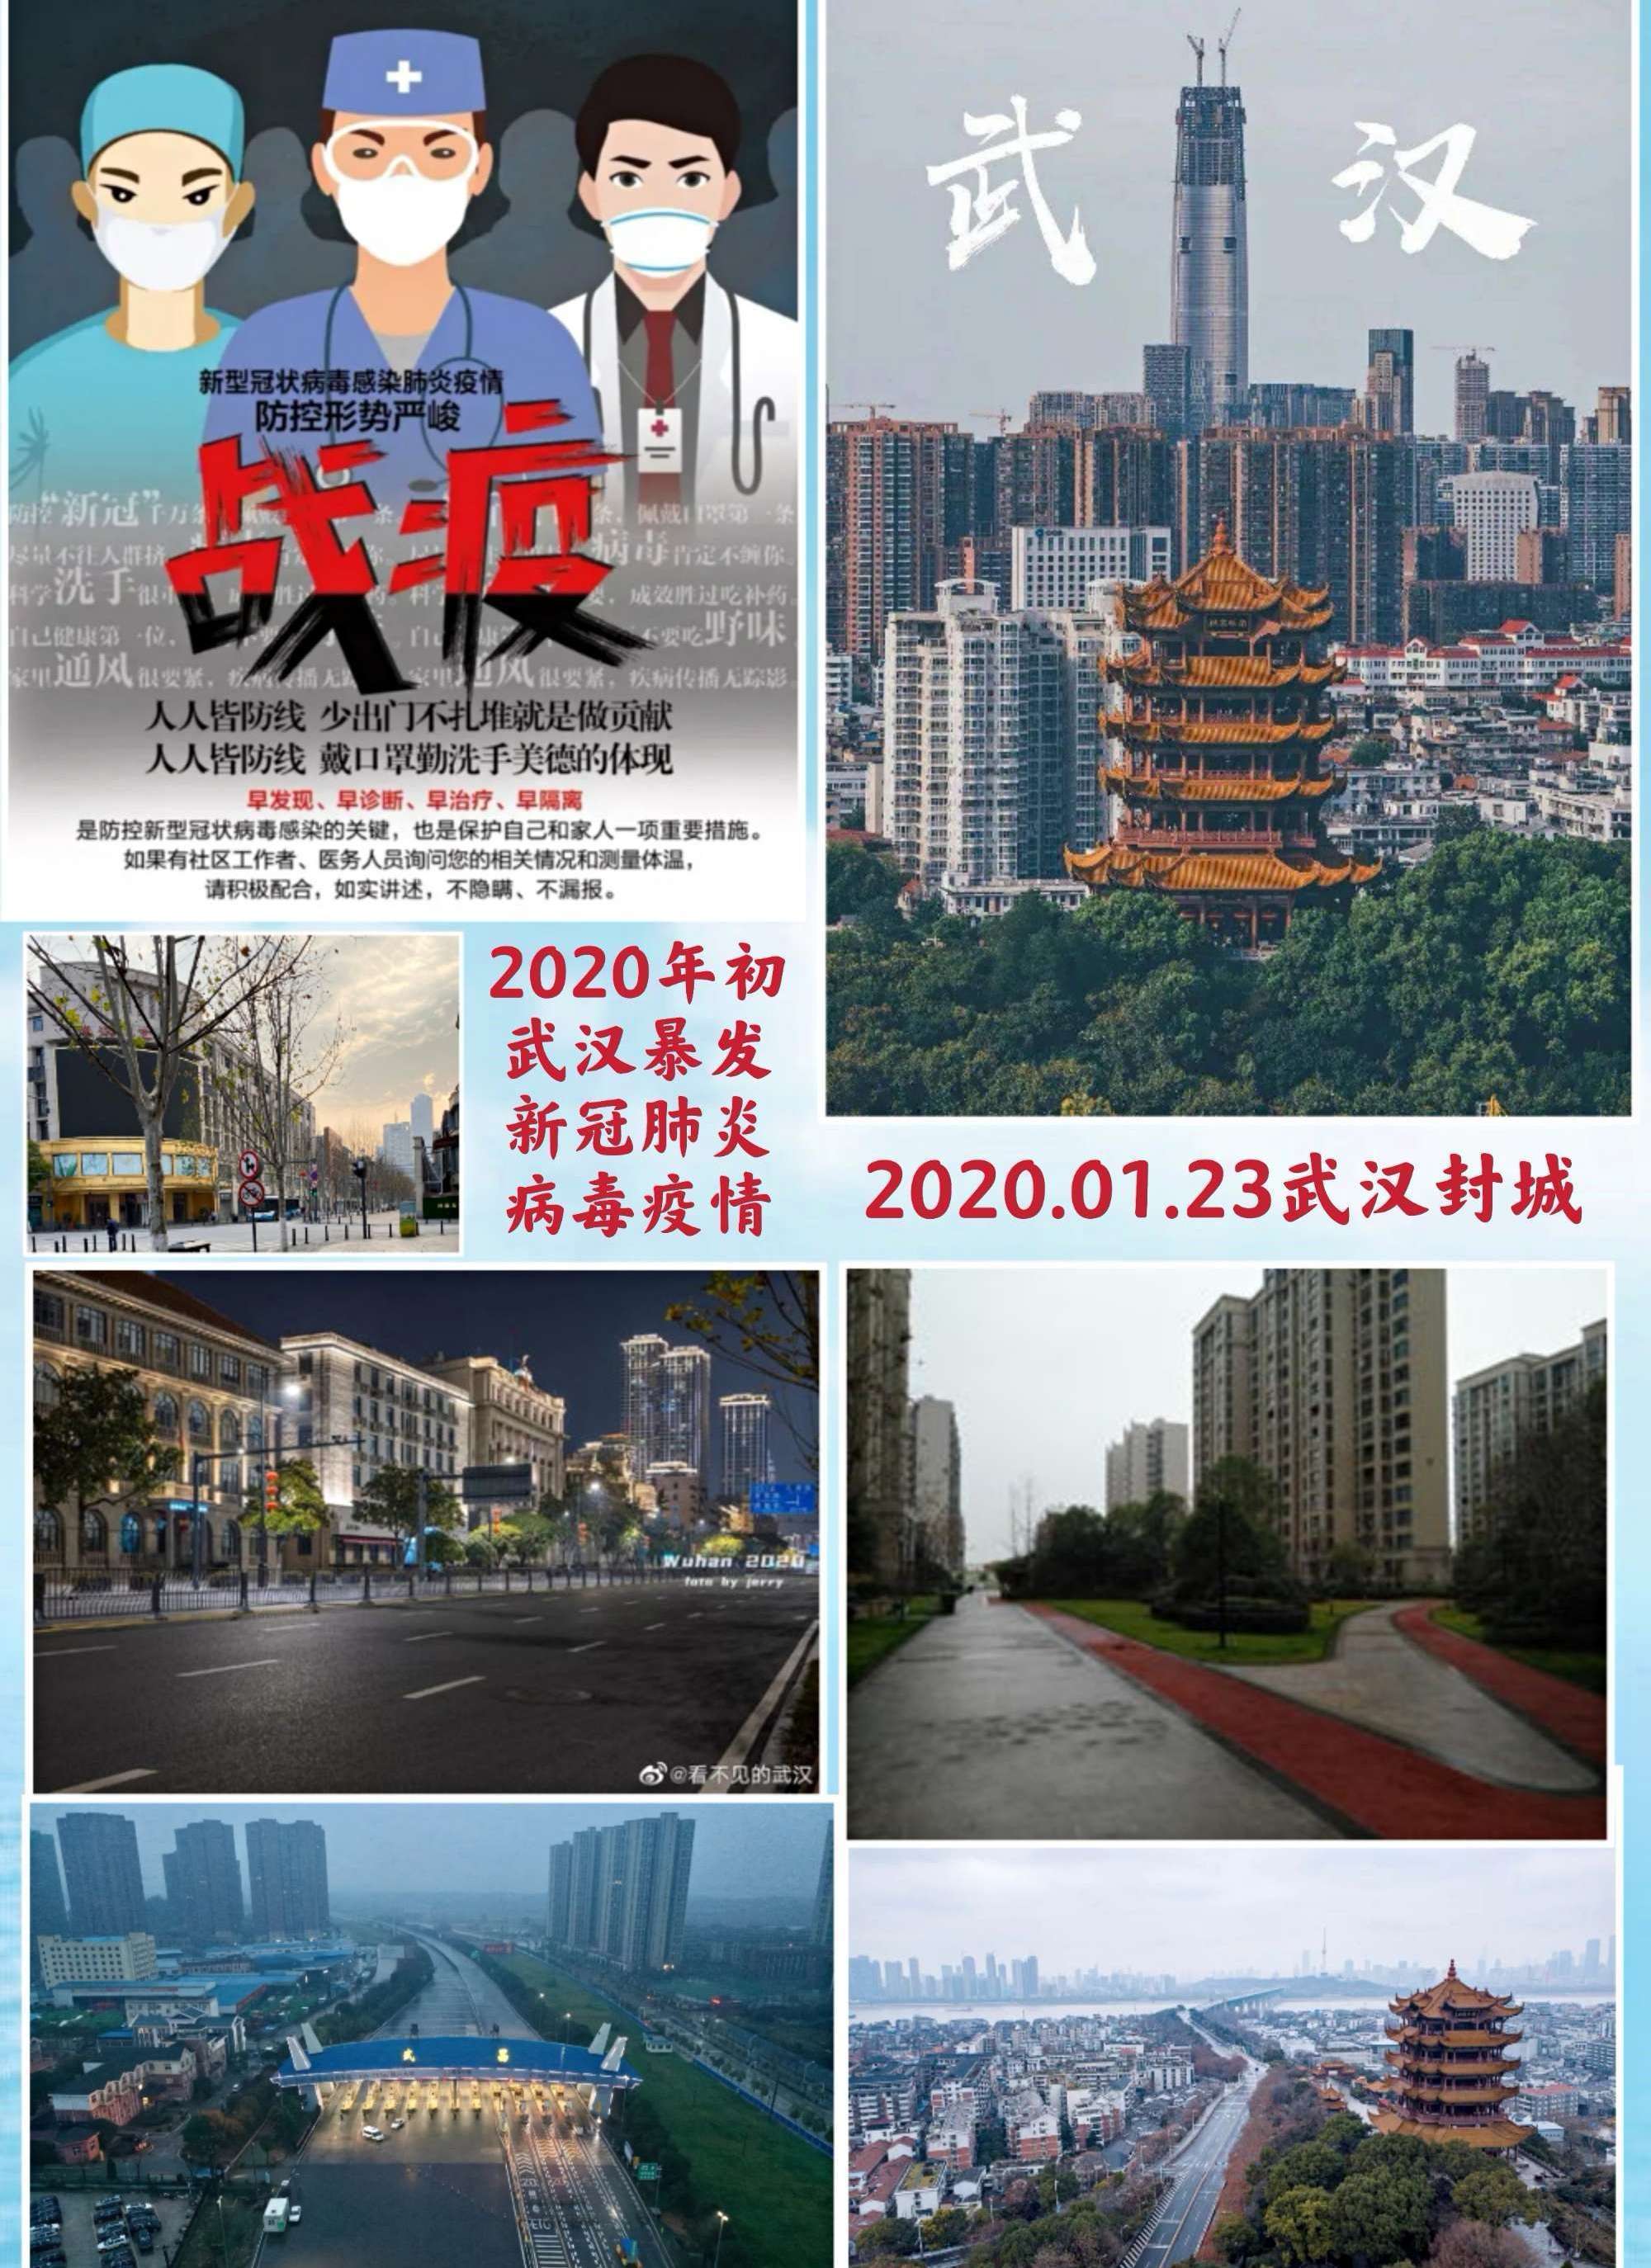 2020年初武汉市暴发新冠肺炎病毒疫情漫延全国